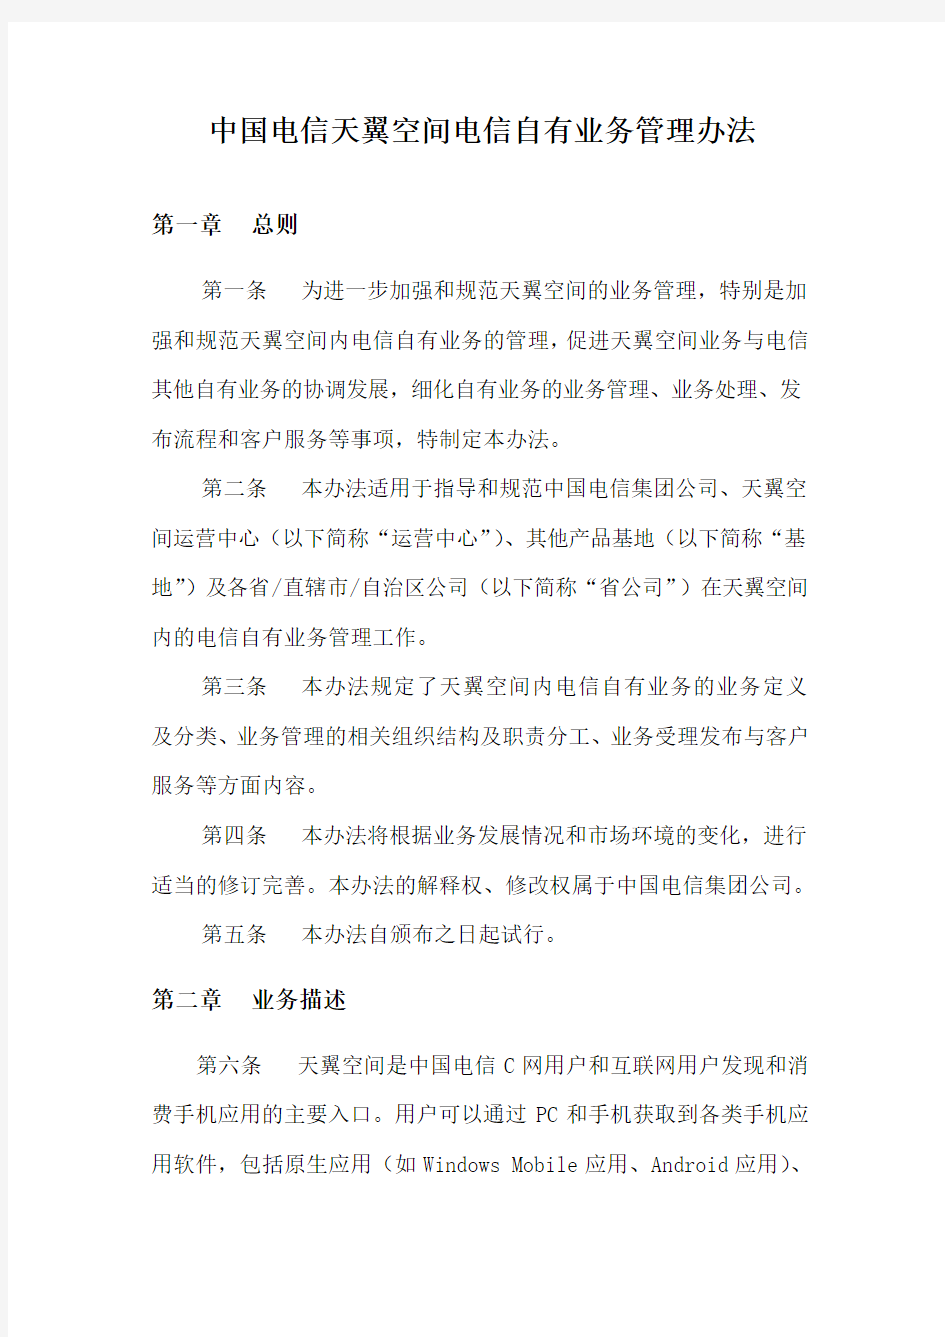 中国电信天翼空间自有业务管理办法修改稿0416